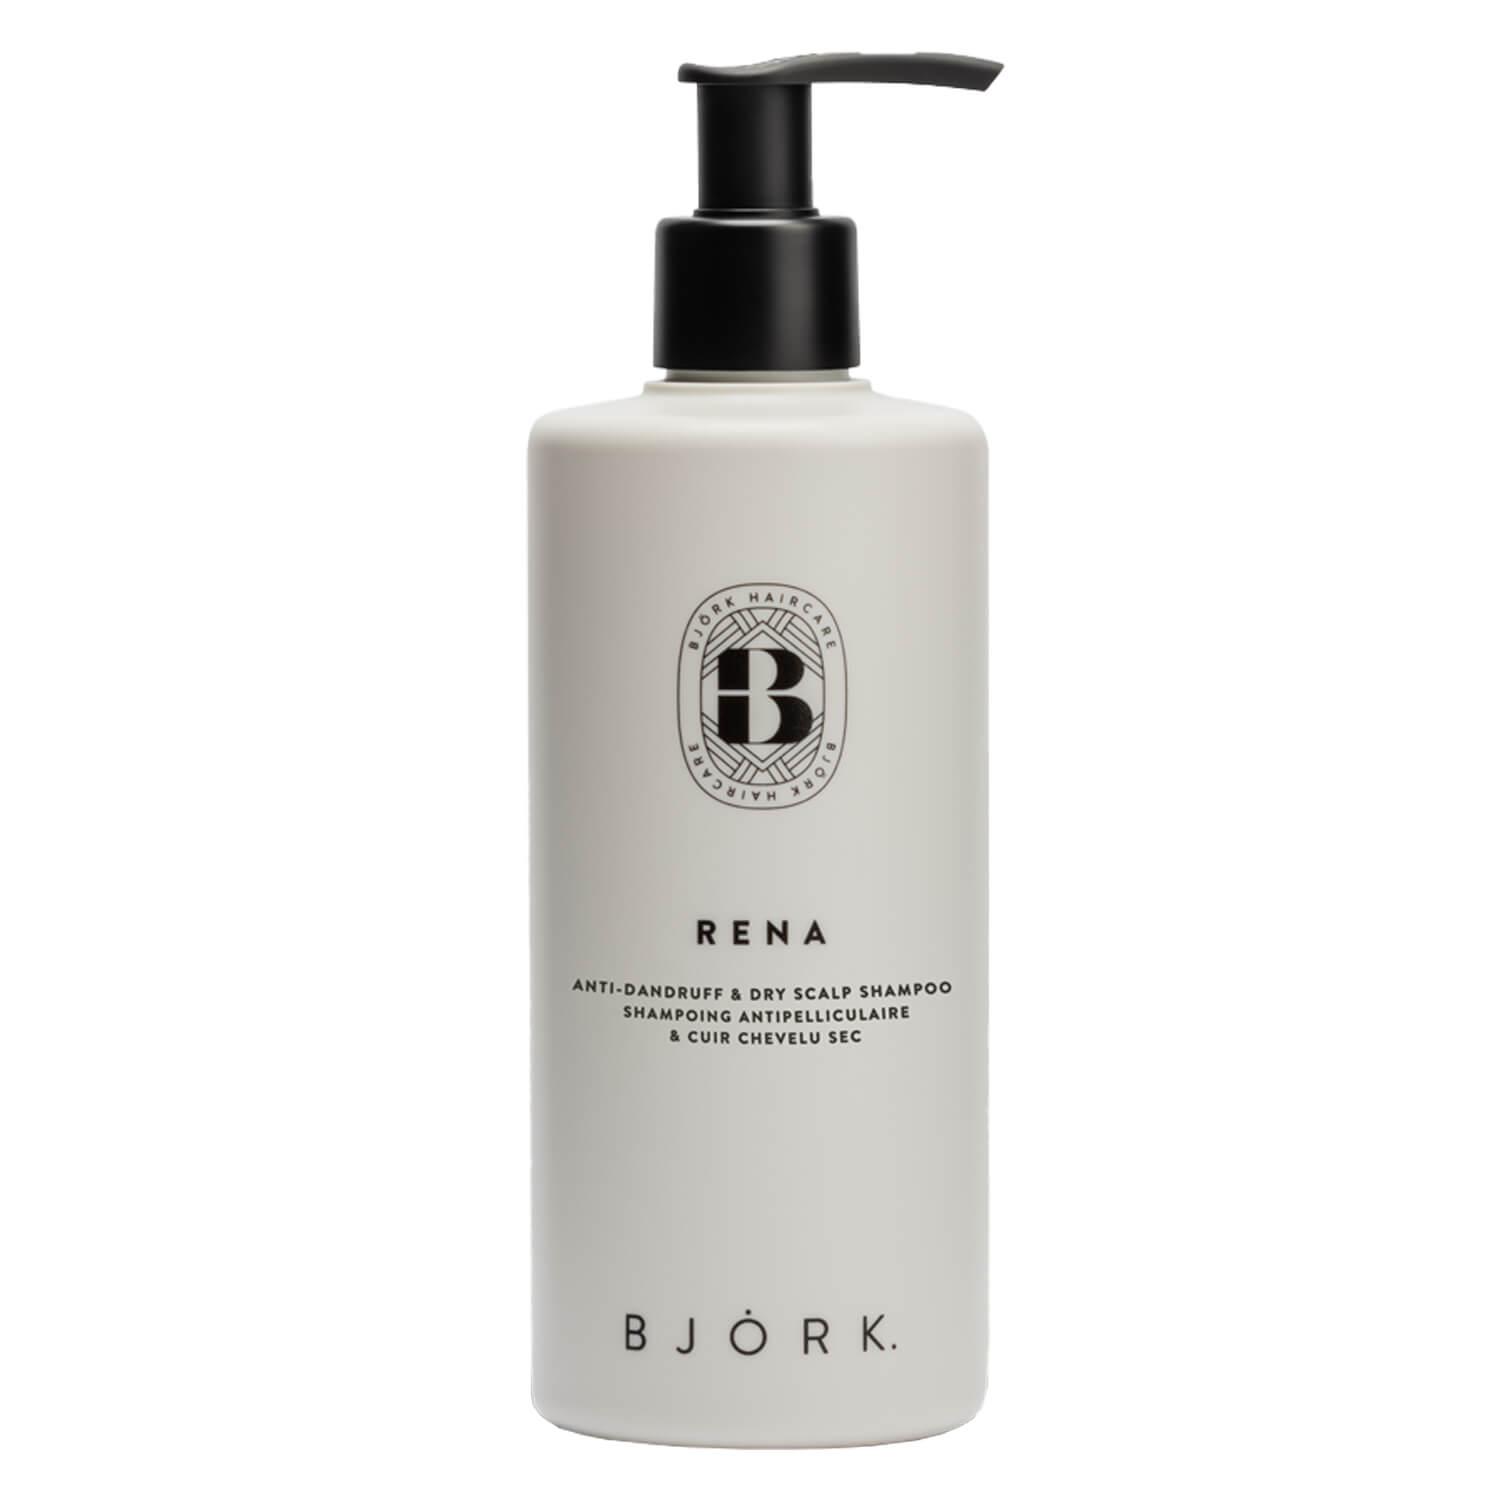 BJÖRK - Rena Anti-dandruff & Dry Scalp Shampoo